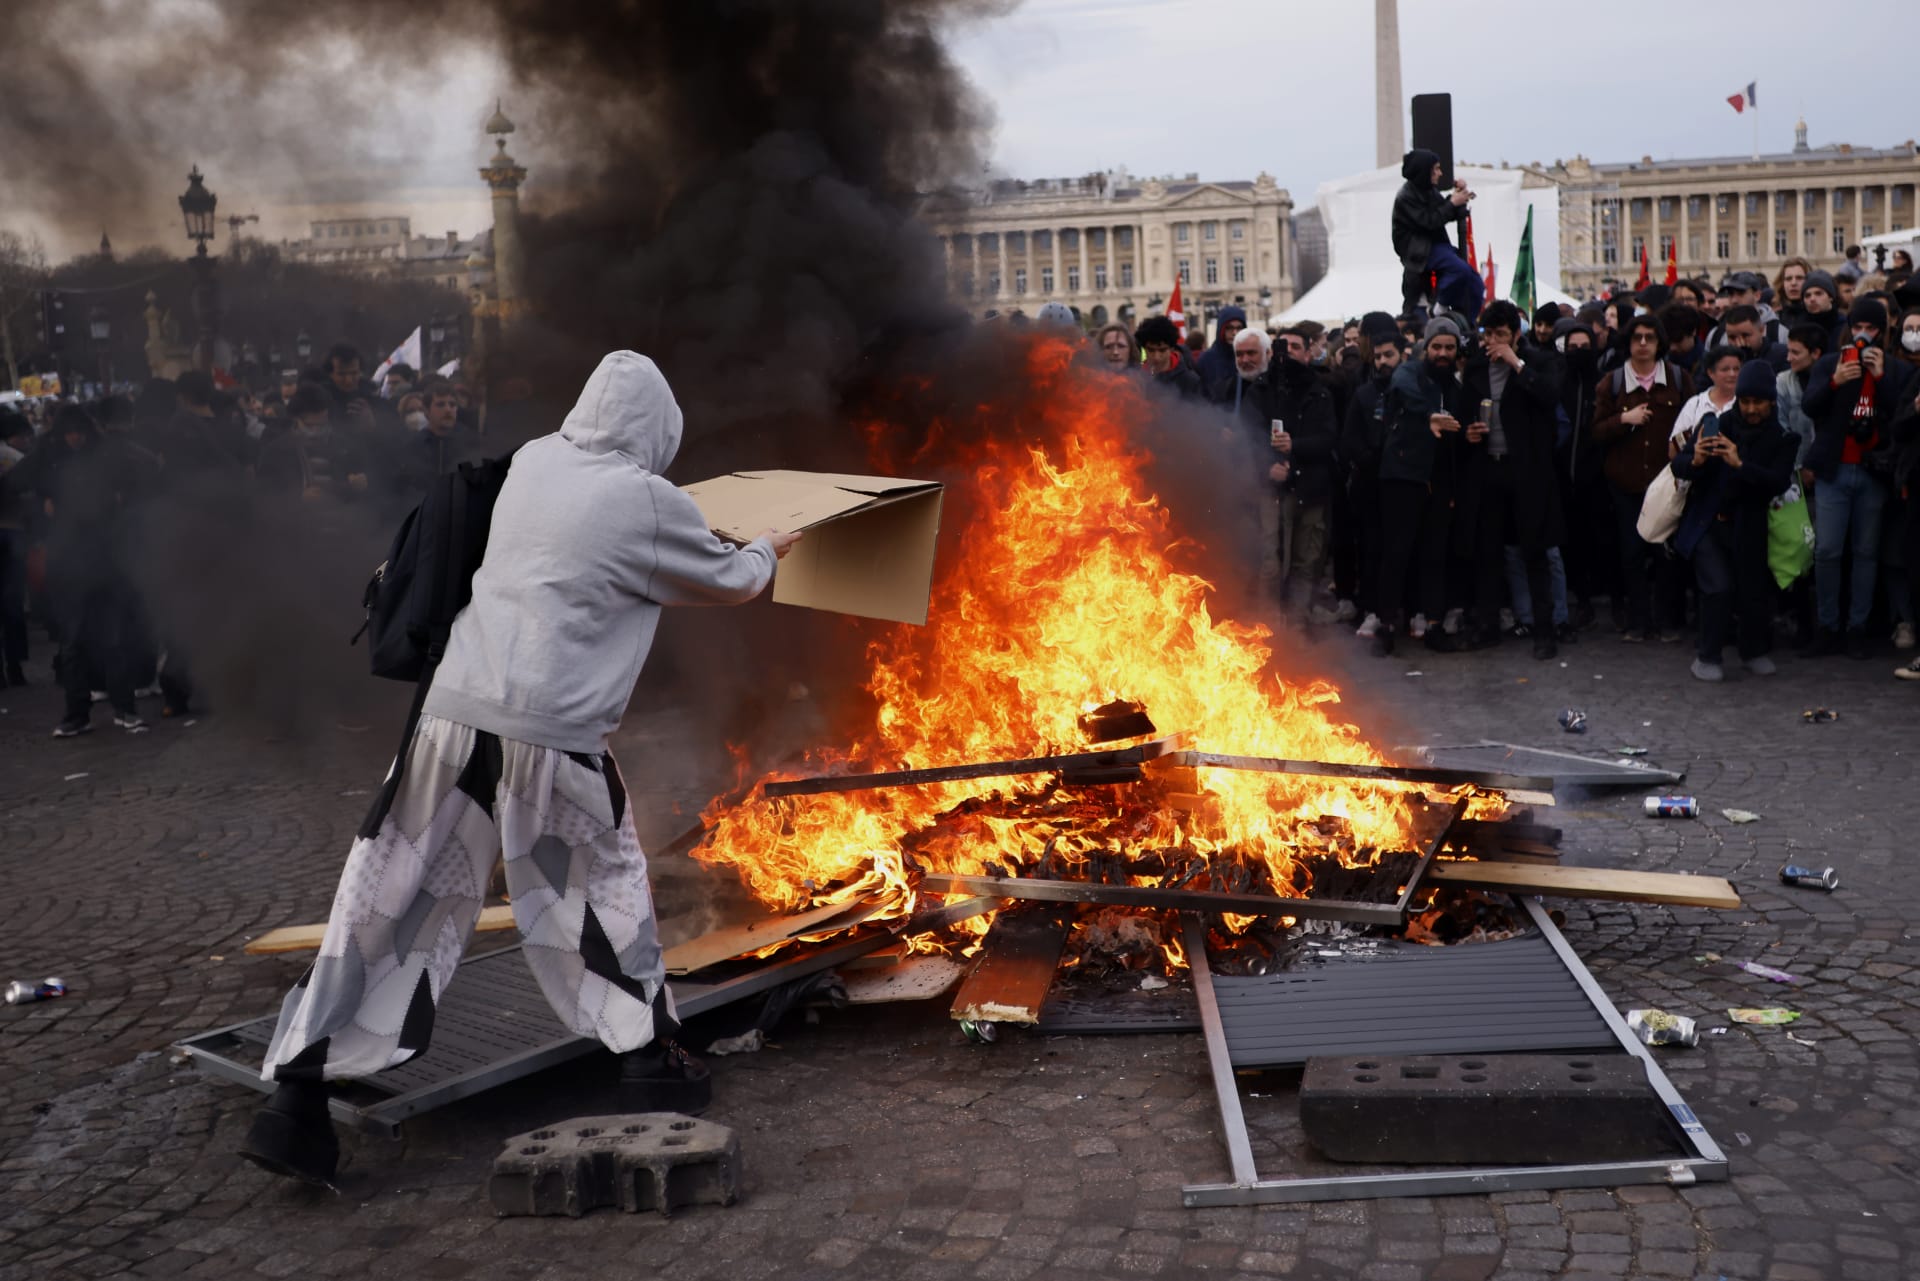 Po rozhodnutí přijmout důchodovou reformu bez hlasování poslanců vypukly v Paříži další protesty.  